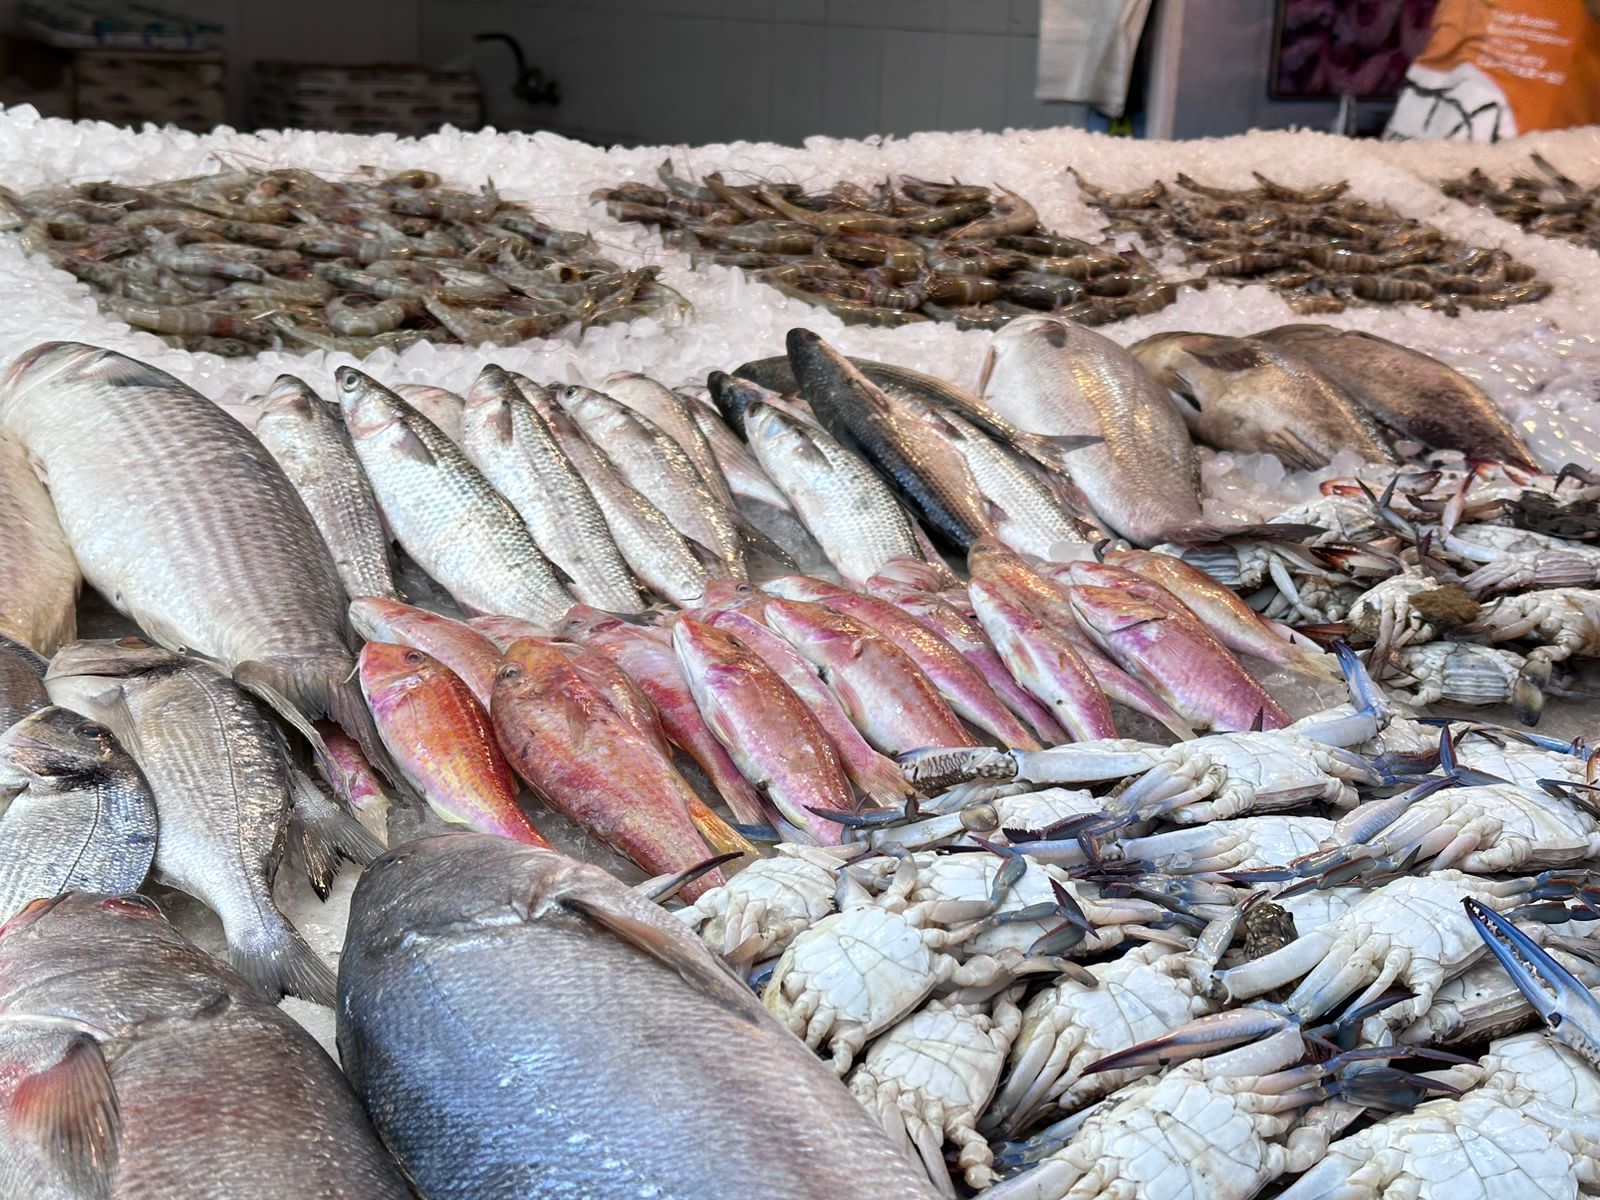 أسماك سوق بورسعيد